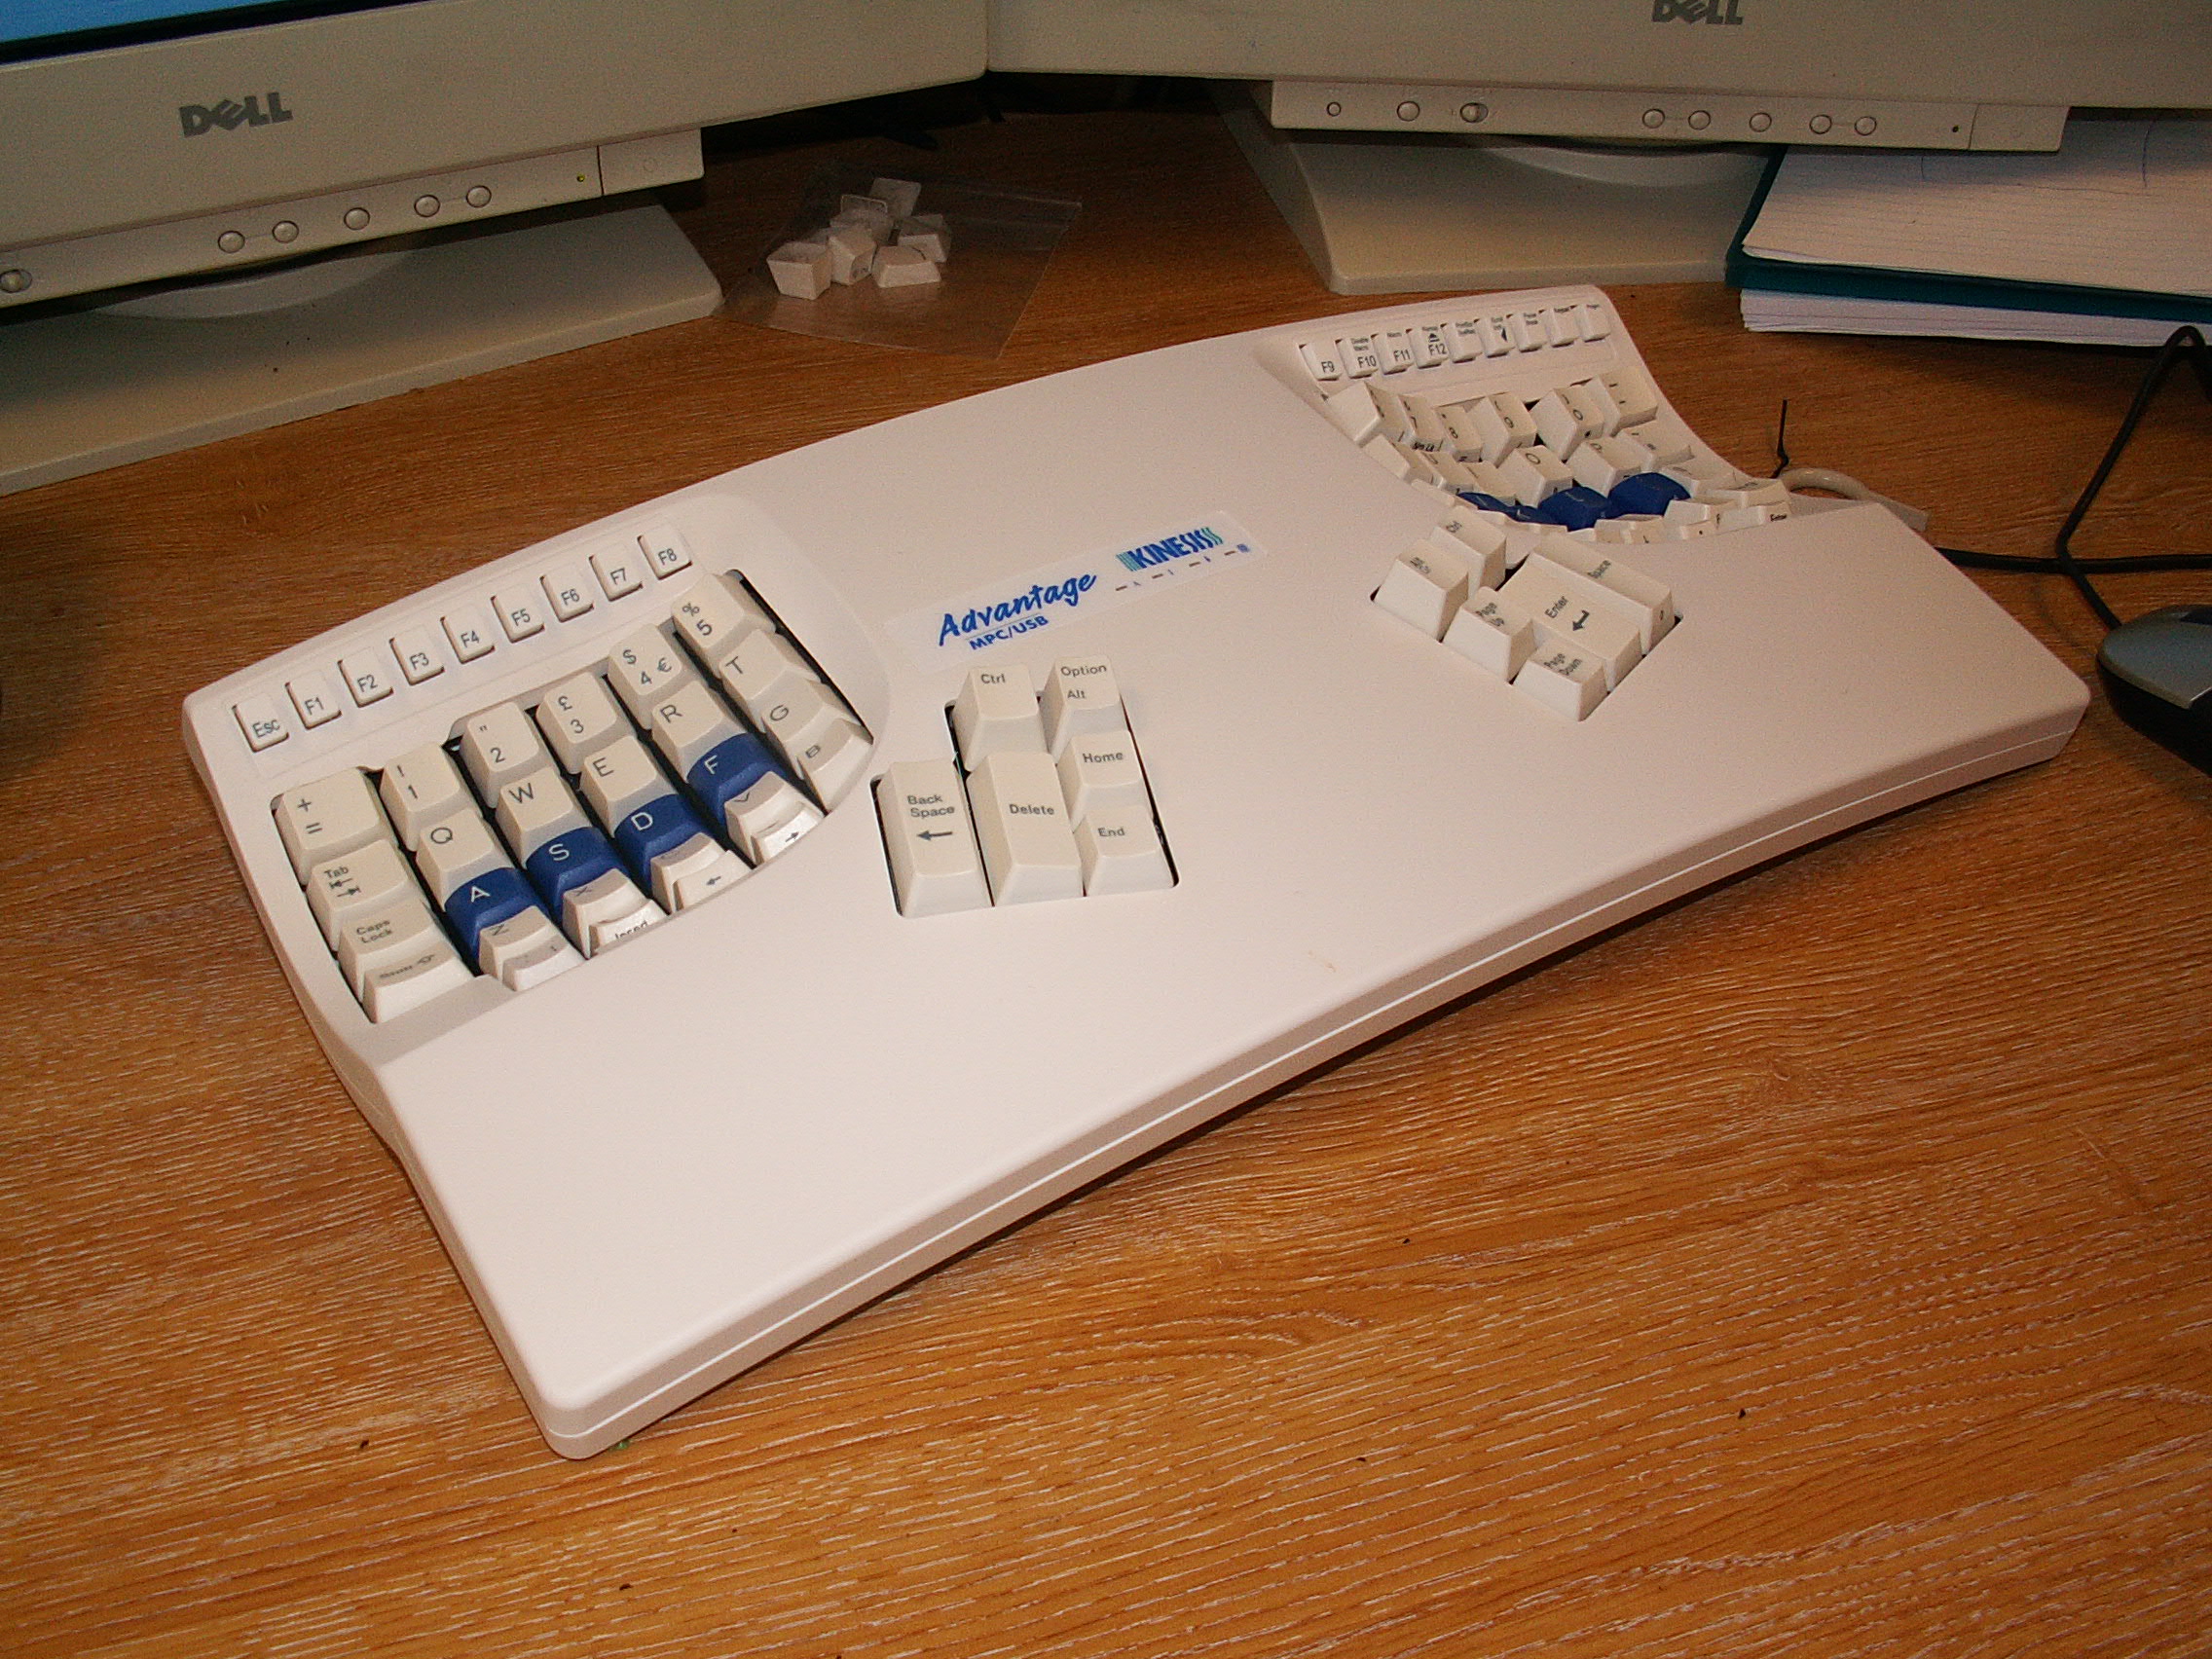 Kinesis-keyboard.jpg